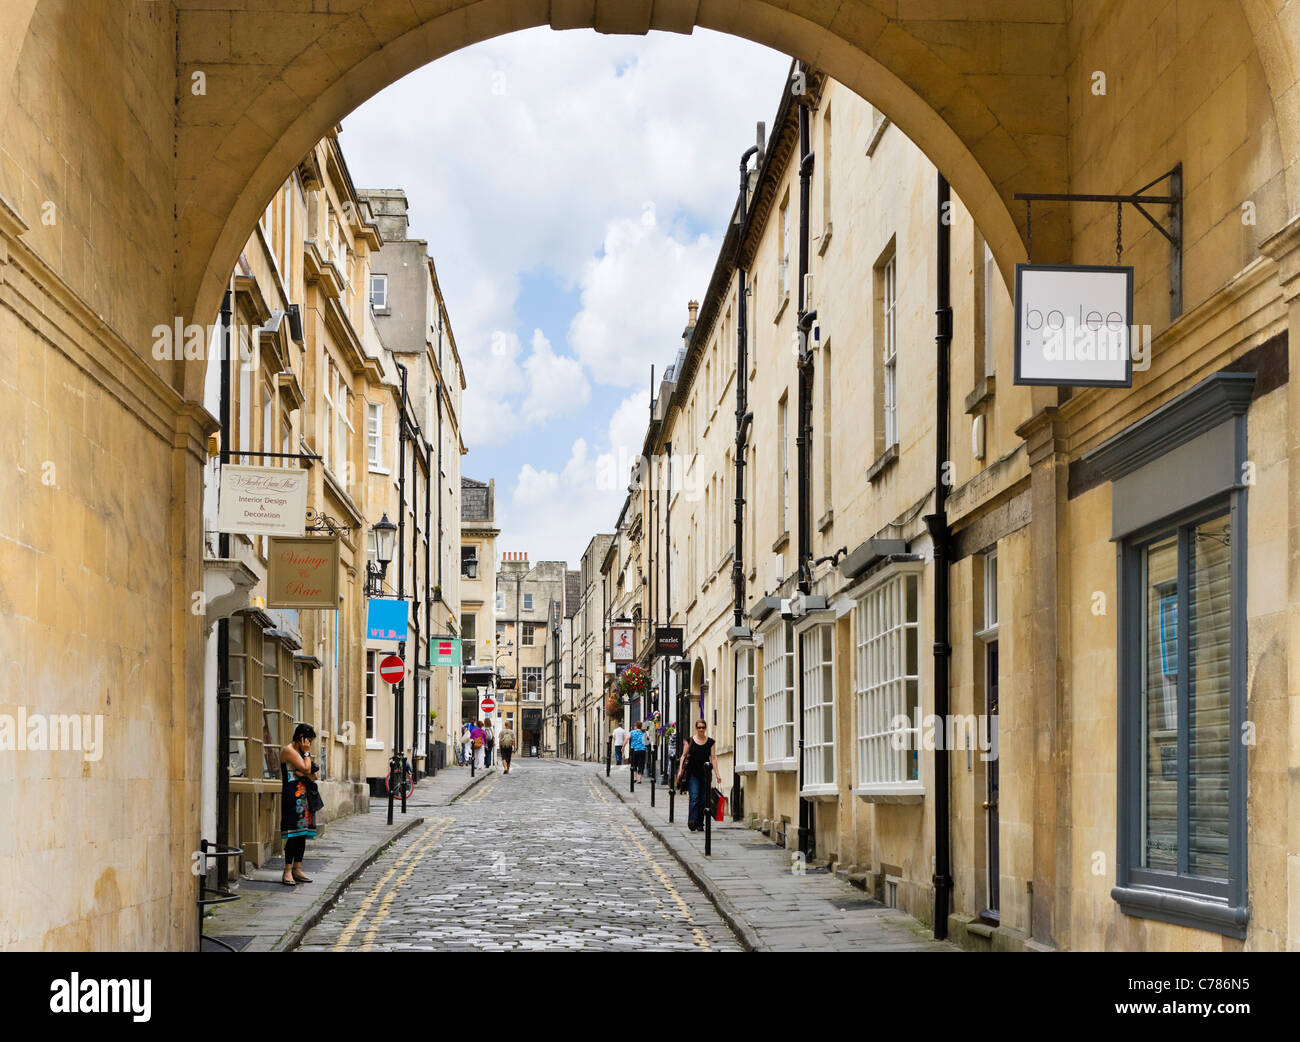 La rue Queen, près de la vieille ville, Bath, Somerset, England, UK Banque D'Images